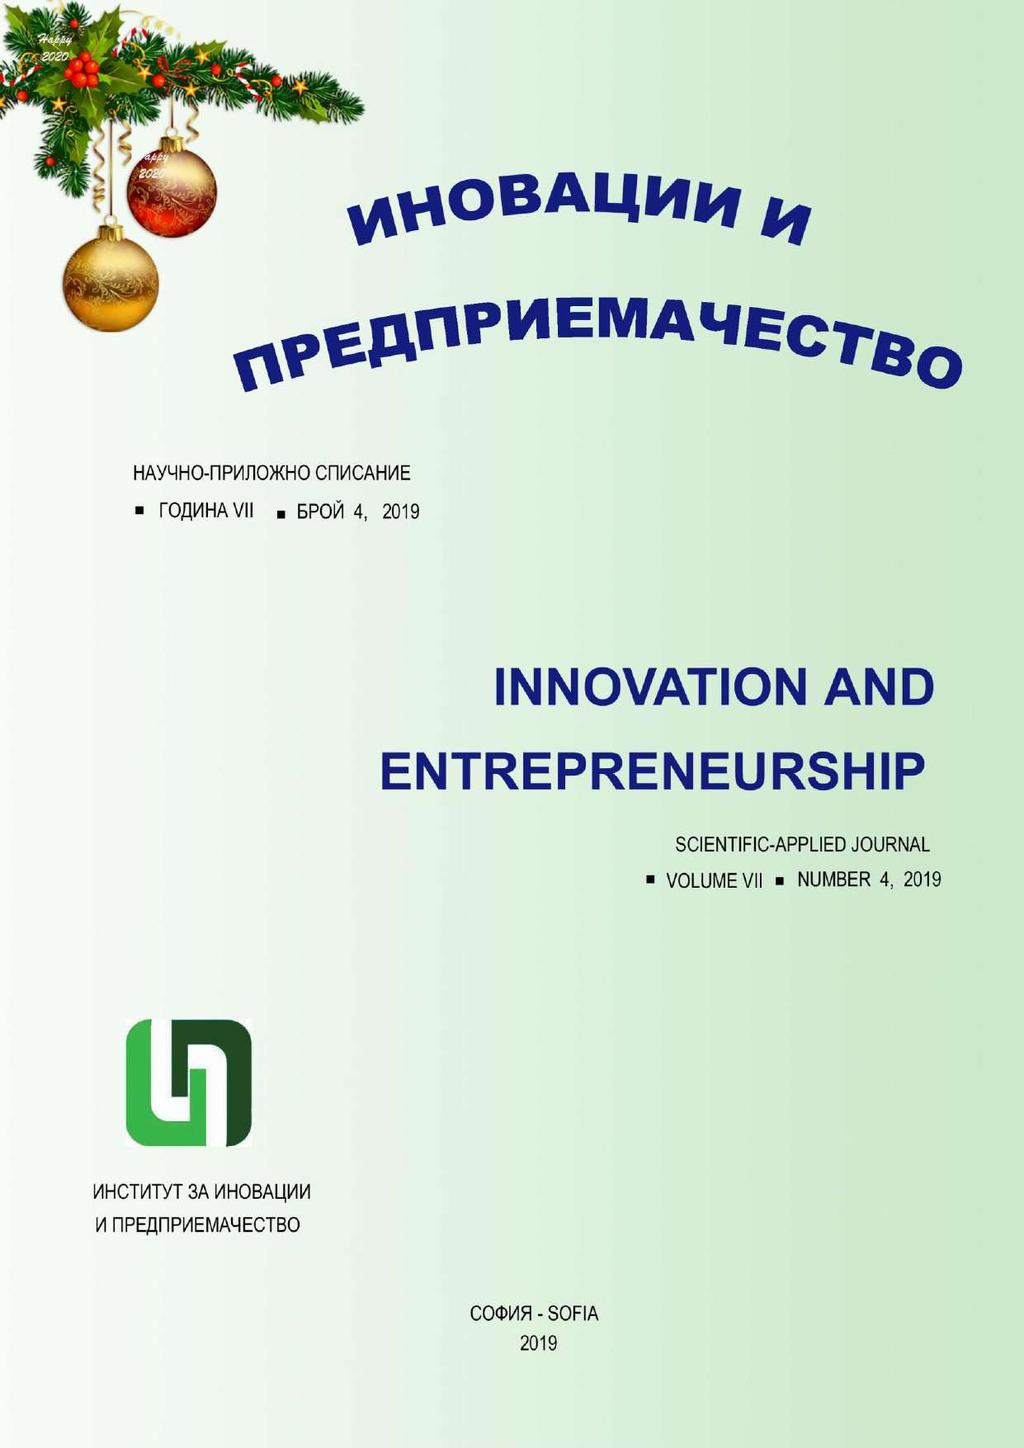 Innovation and entrepreneurship, ISSN